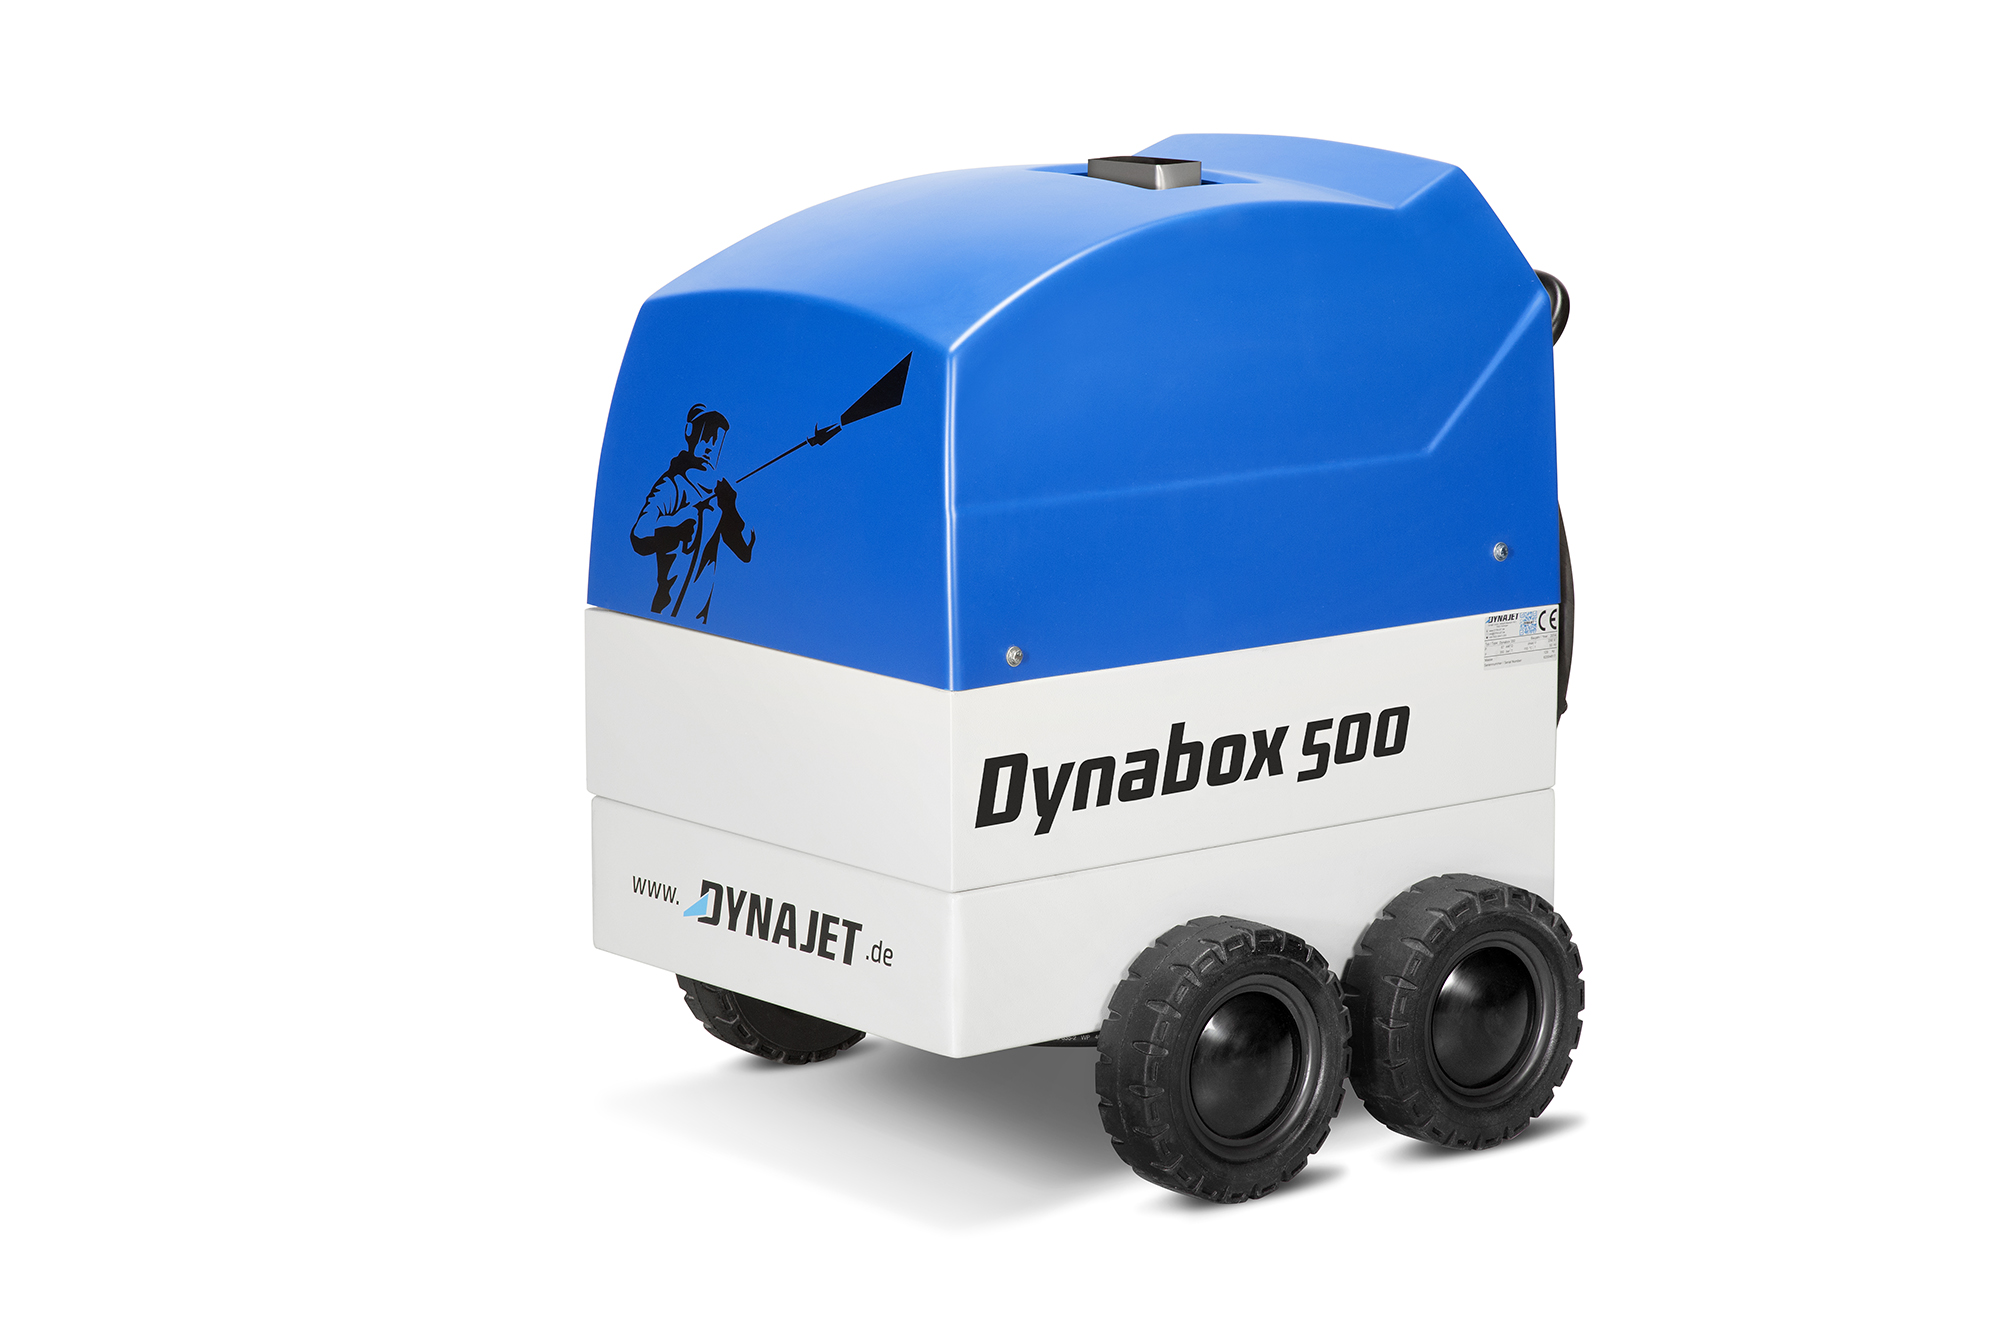 Dynanbox-500